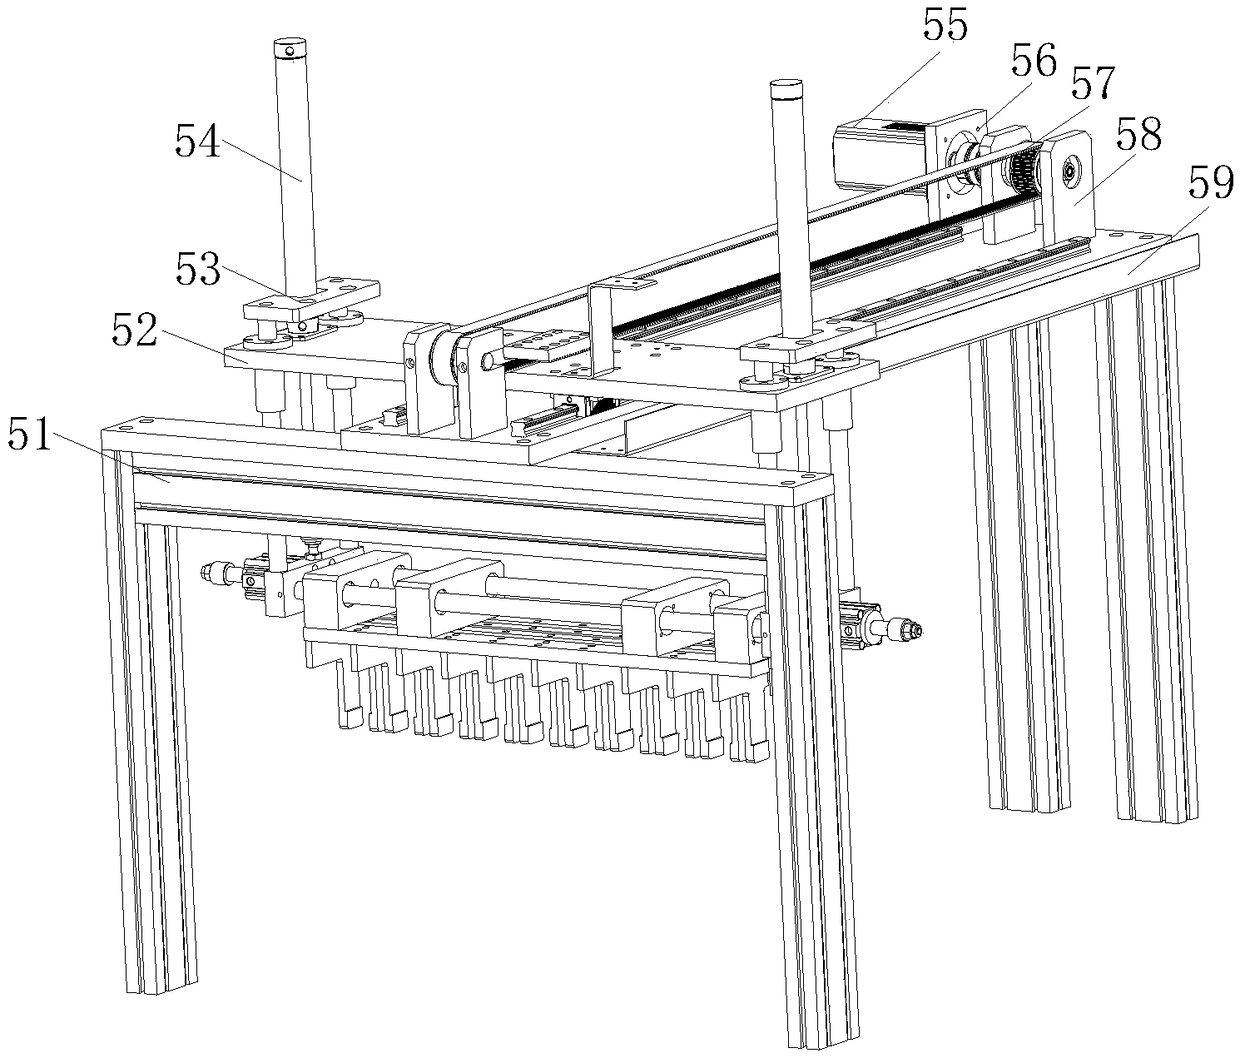 A vertical pressurizing machine